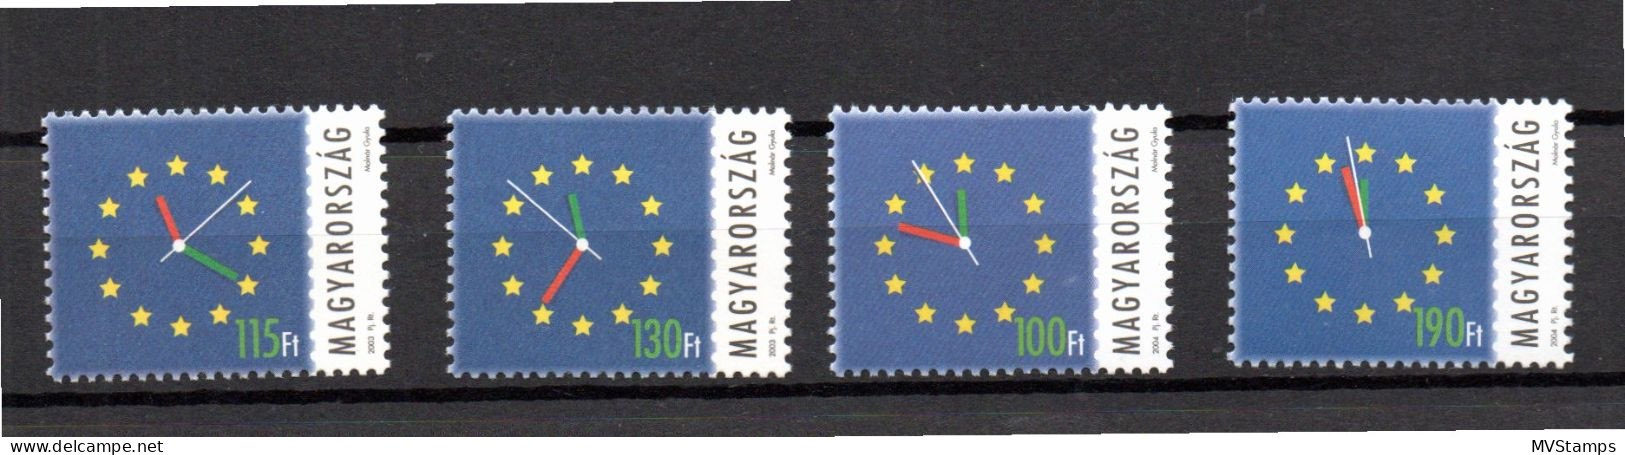 Ungarn 2003/04 Aufnahme Europa Union (Michel 4808, 4814, 4837, 4844) Postfrisch - Unused Stamps